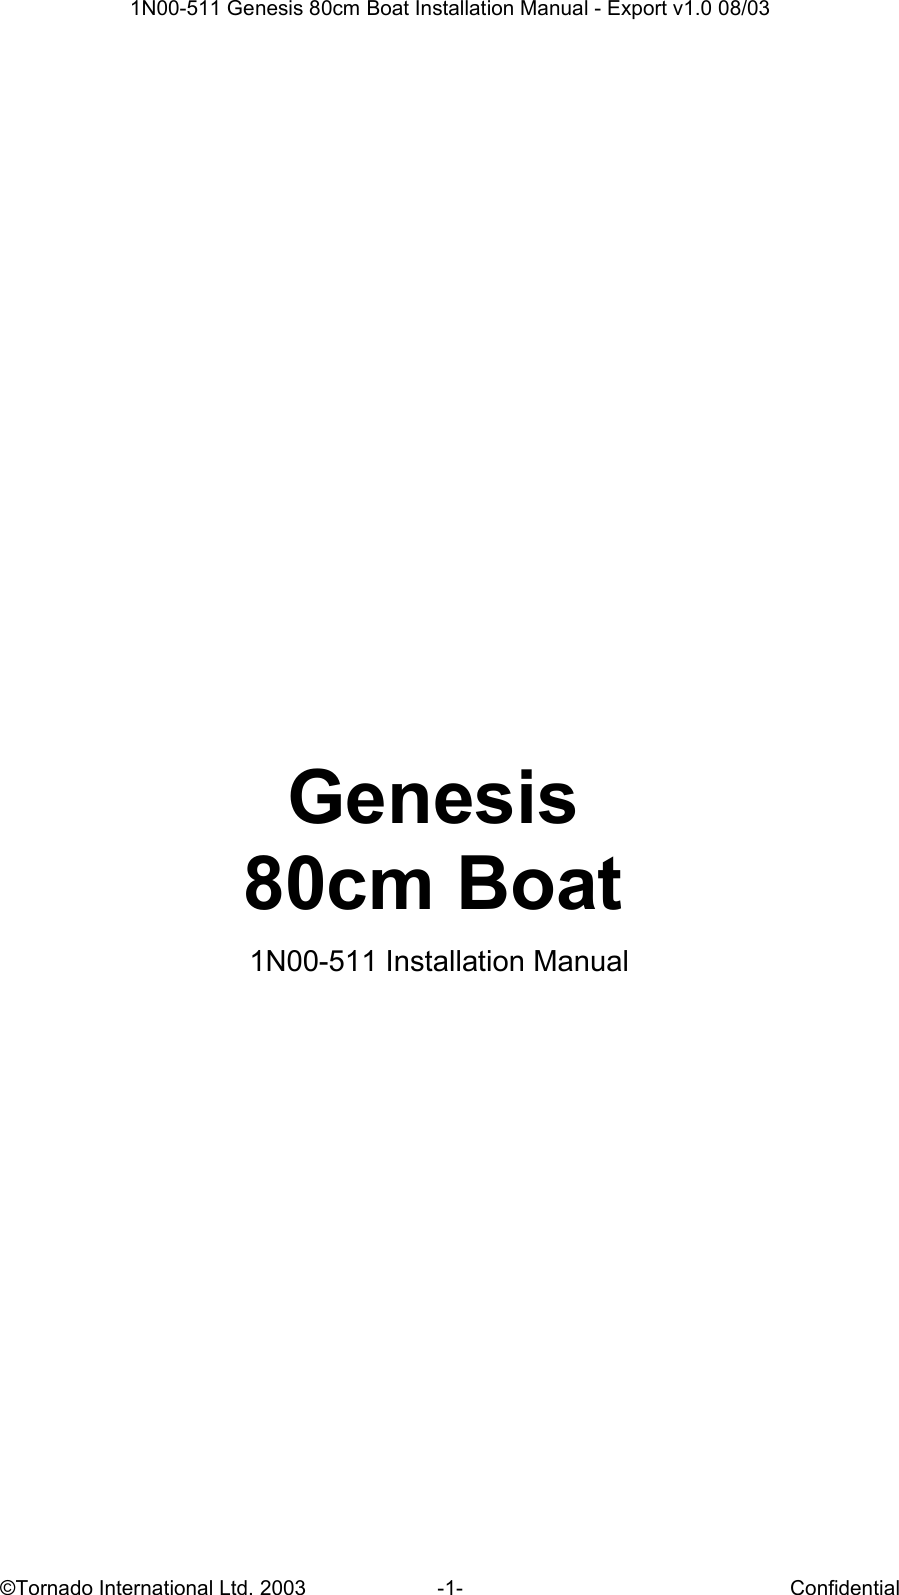  1N00-511 Genesis 80cm Boat Installation Manual - Export v1.0 08/03 ©Tornado International Ltd. 2003  -1-  Confidential            Genesis  80cm Boat   1N00-511 Installation Manual              